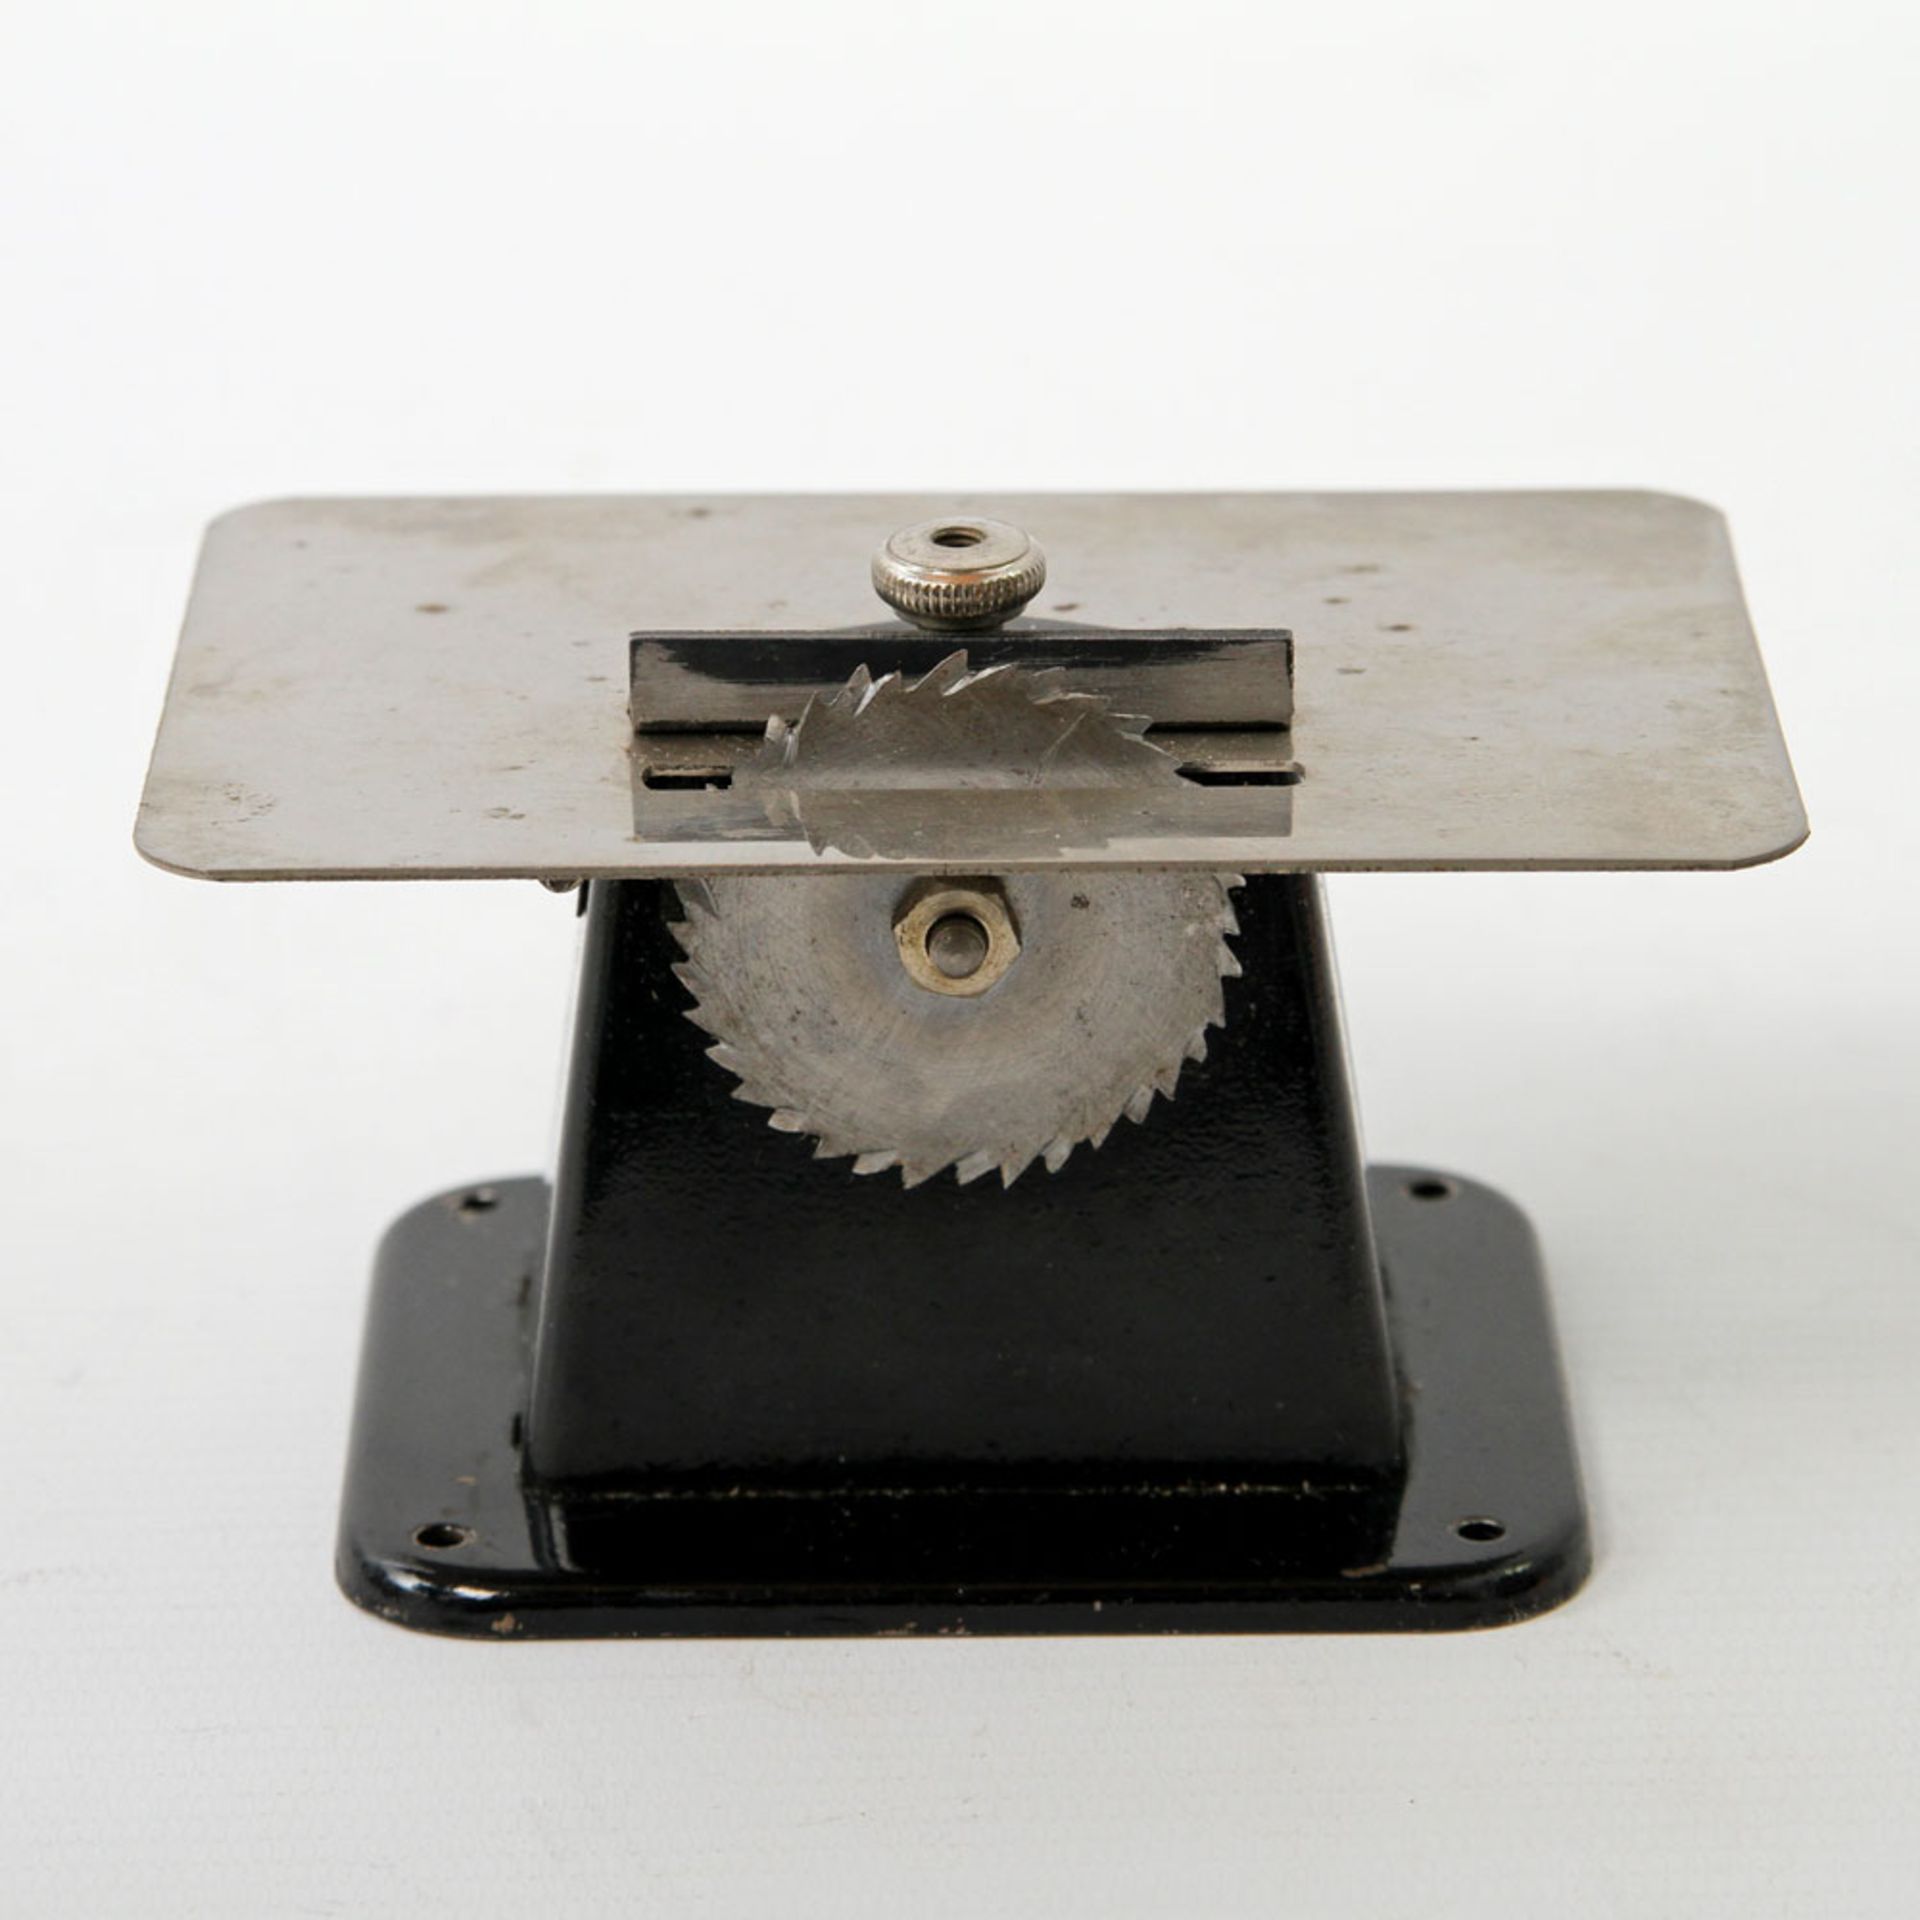 MÄRKLIN Antriebsmodell Kreissäge, um 1930, aufklappbare Tischplatte, verstellbare Anschlagleiste.